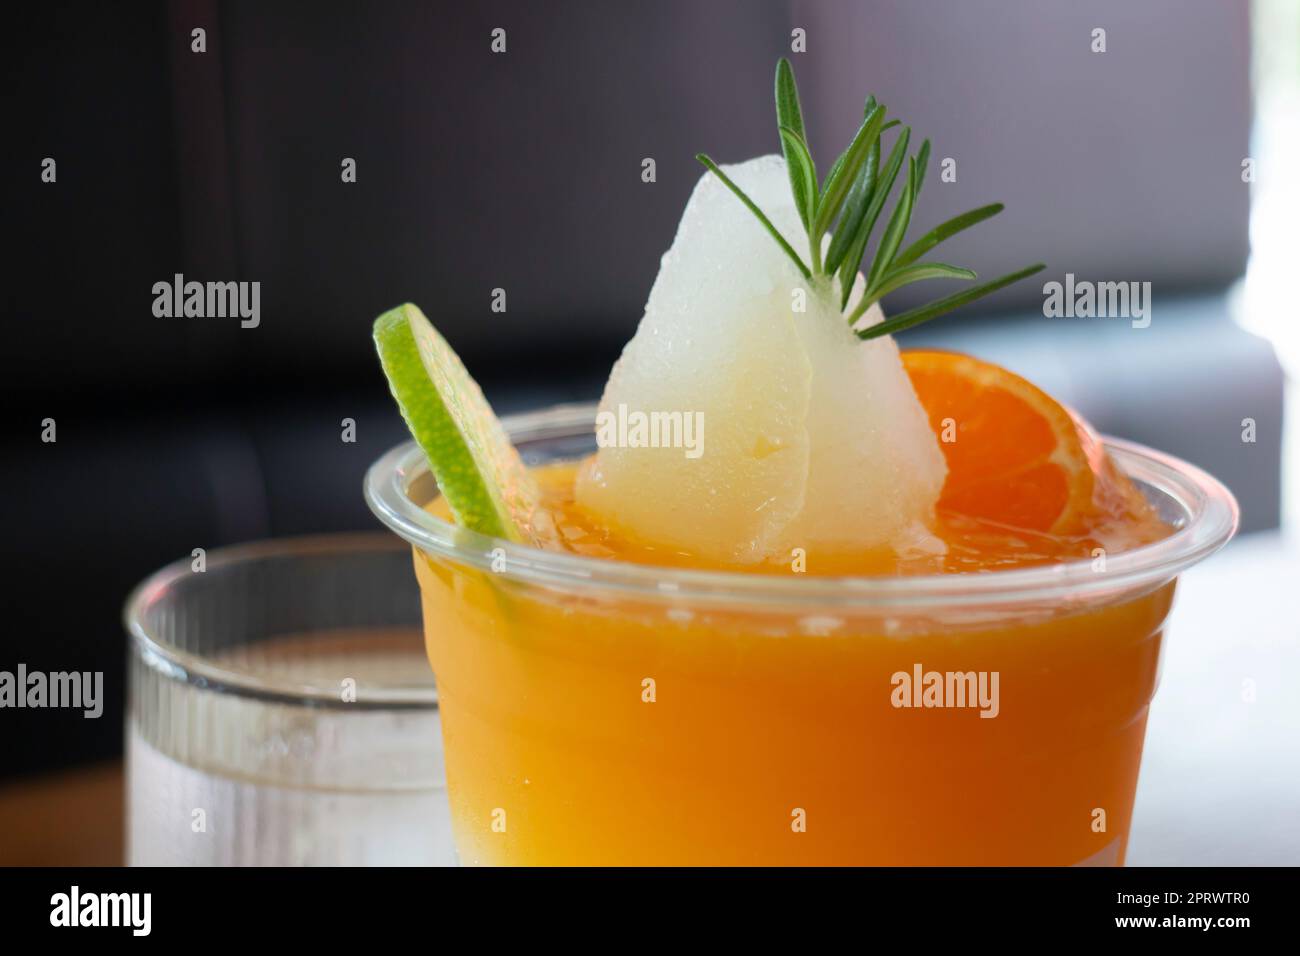 Boisson à base de limonade à l'orange yuzu Banque D'Images